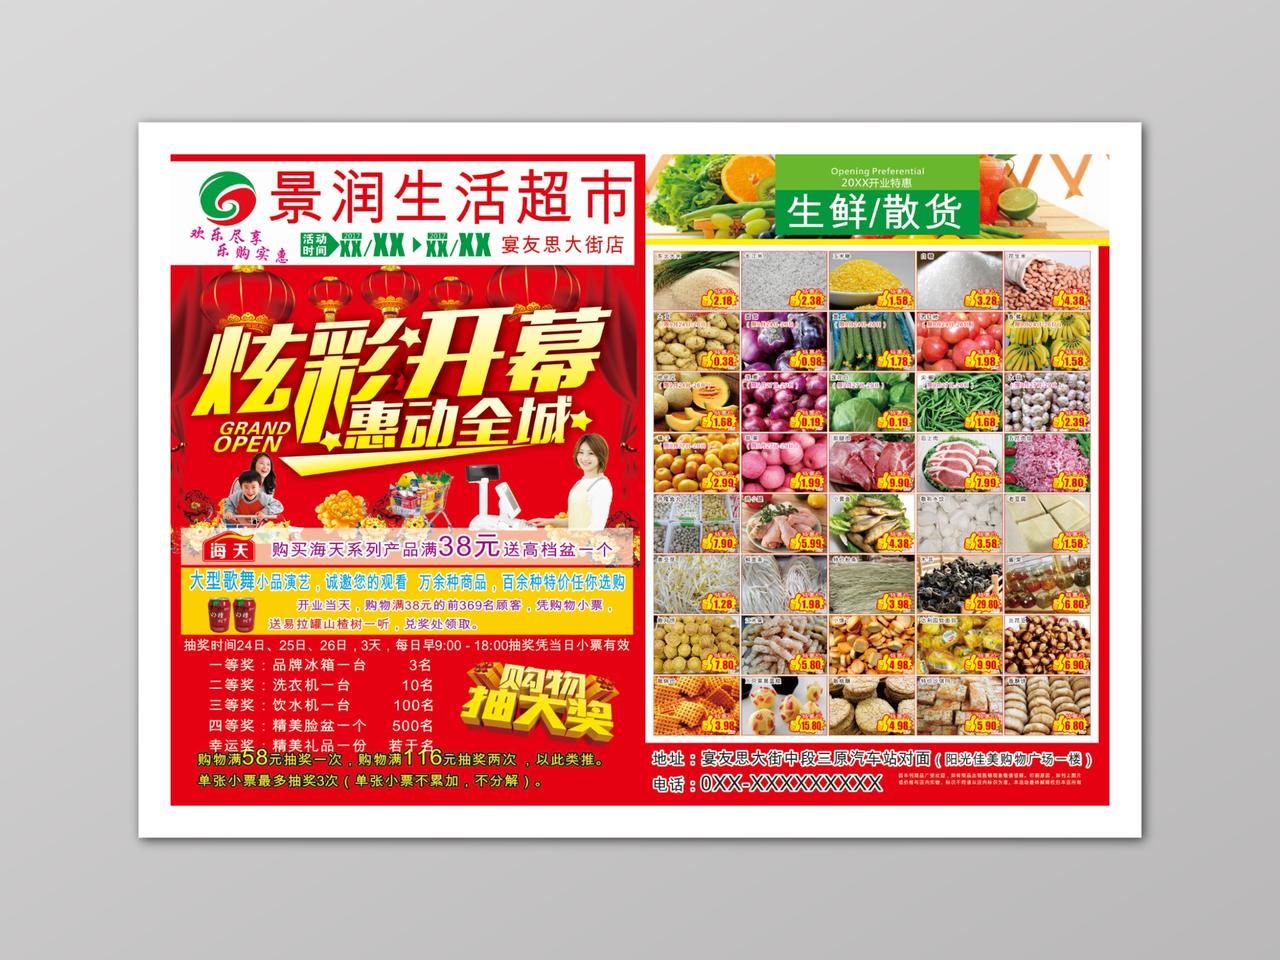 红色炫彩开幕超市促销多款产品活动海报